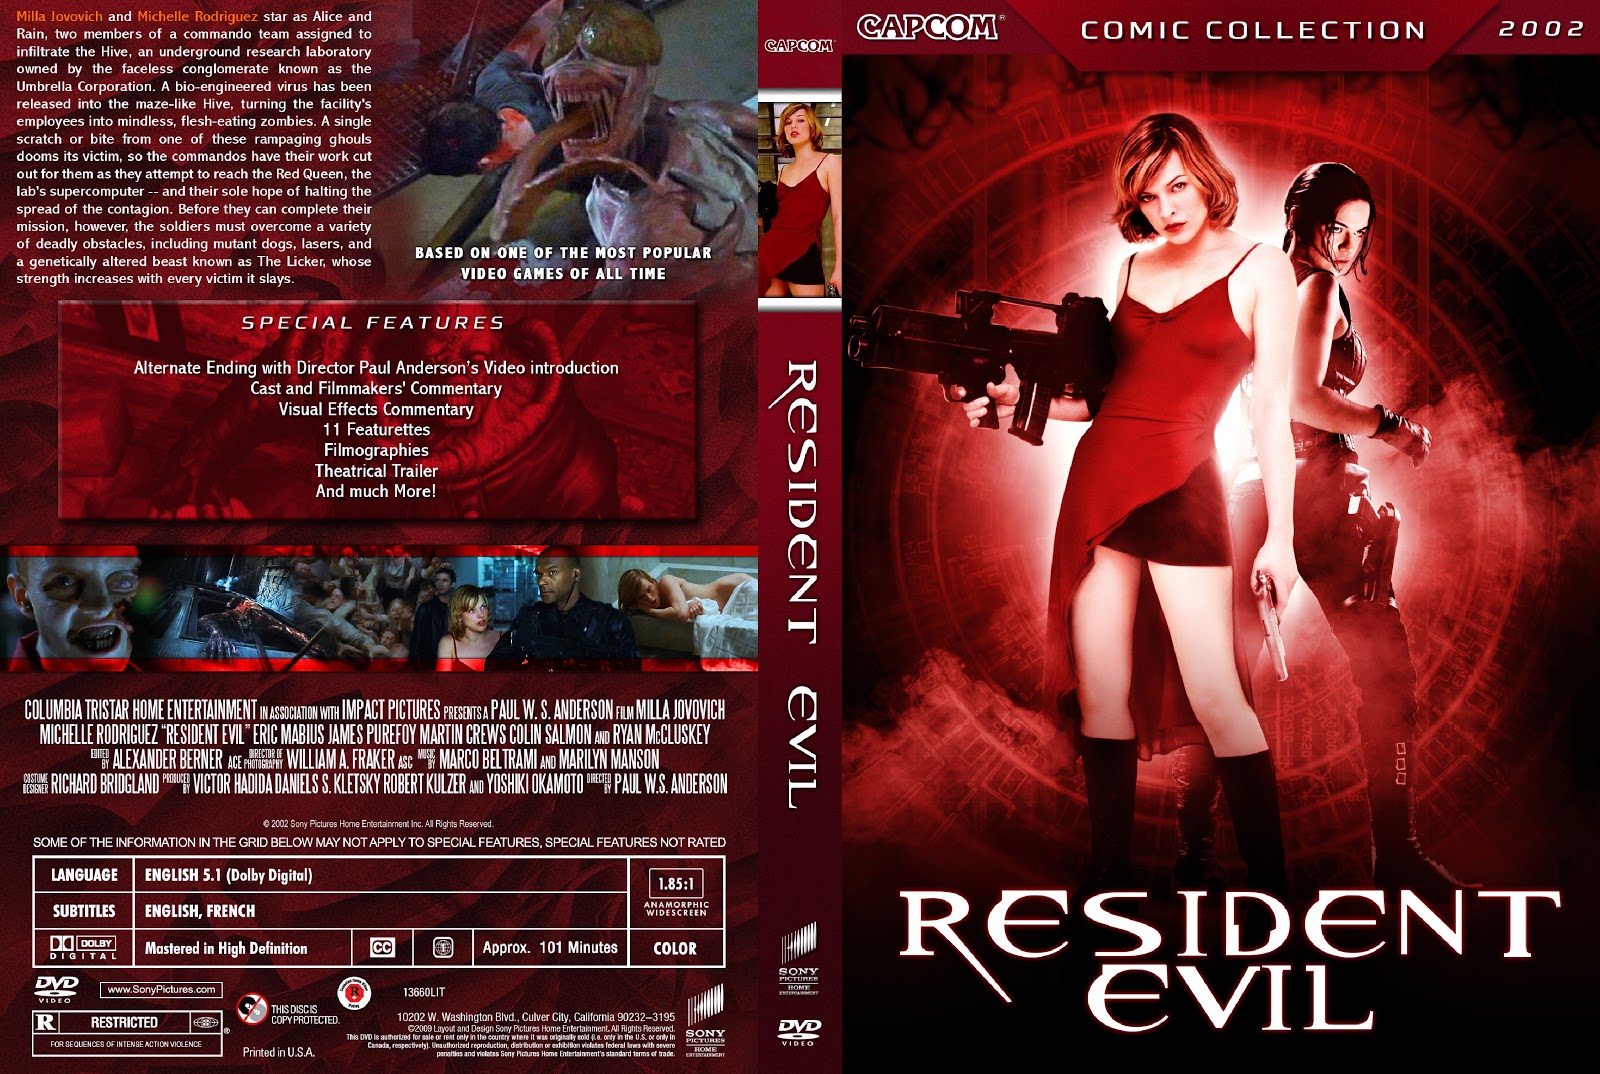 TIENDA DEL DVD: RESIDENT EVIL